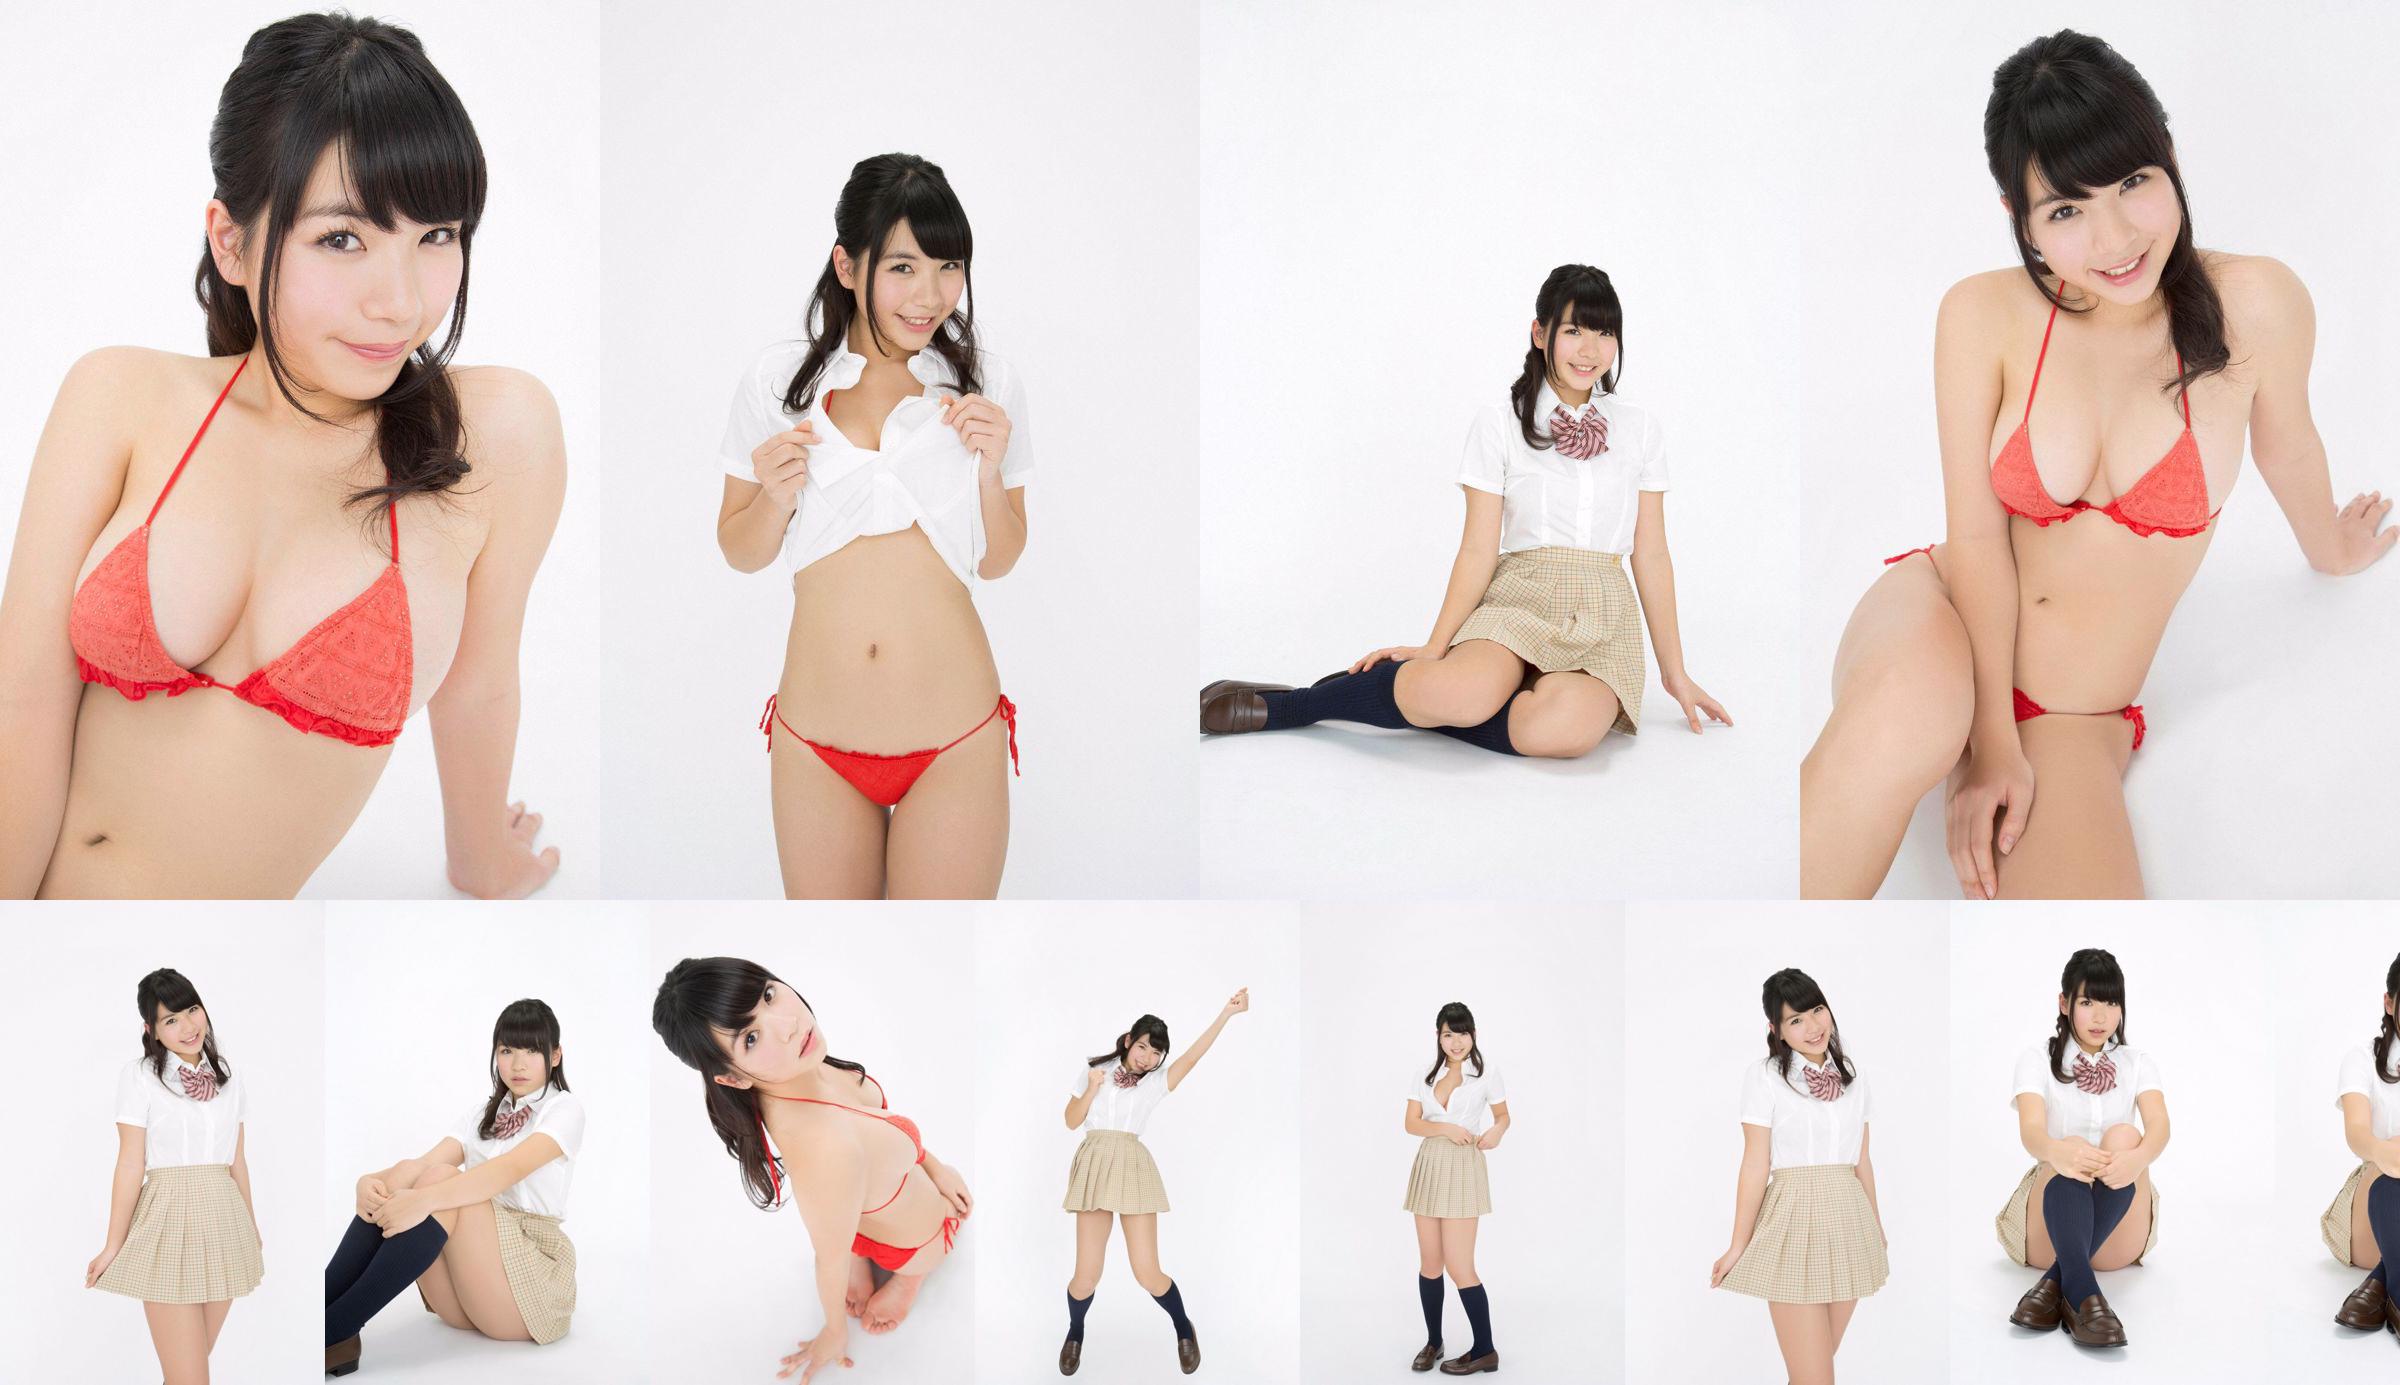 Jun Serizawa / Jun Serizawa "Một nữ sinh trung học năng động, lùn nhất Nhật Bản グ ラ ド ル nhập học! No.e7ff53 Trang 1